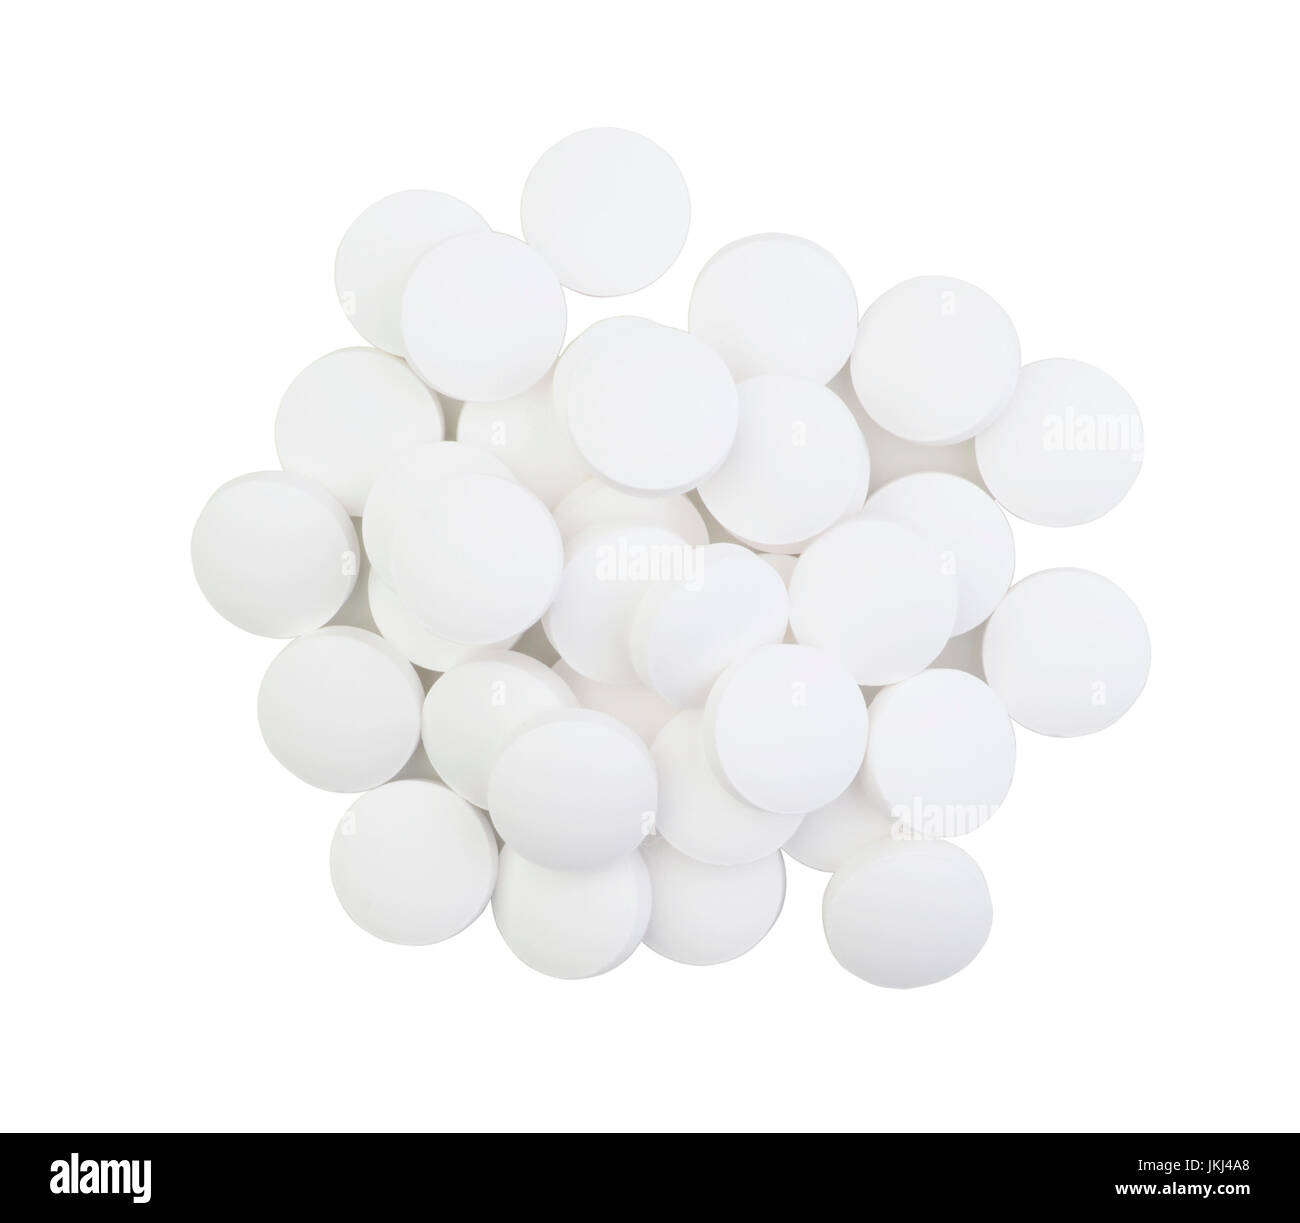 Large pills isolated on white background Stock Photo